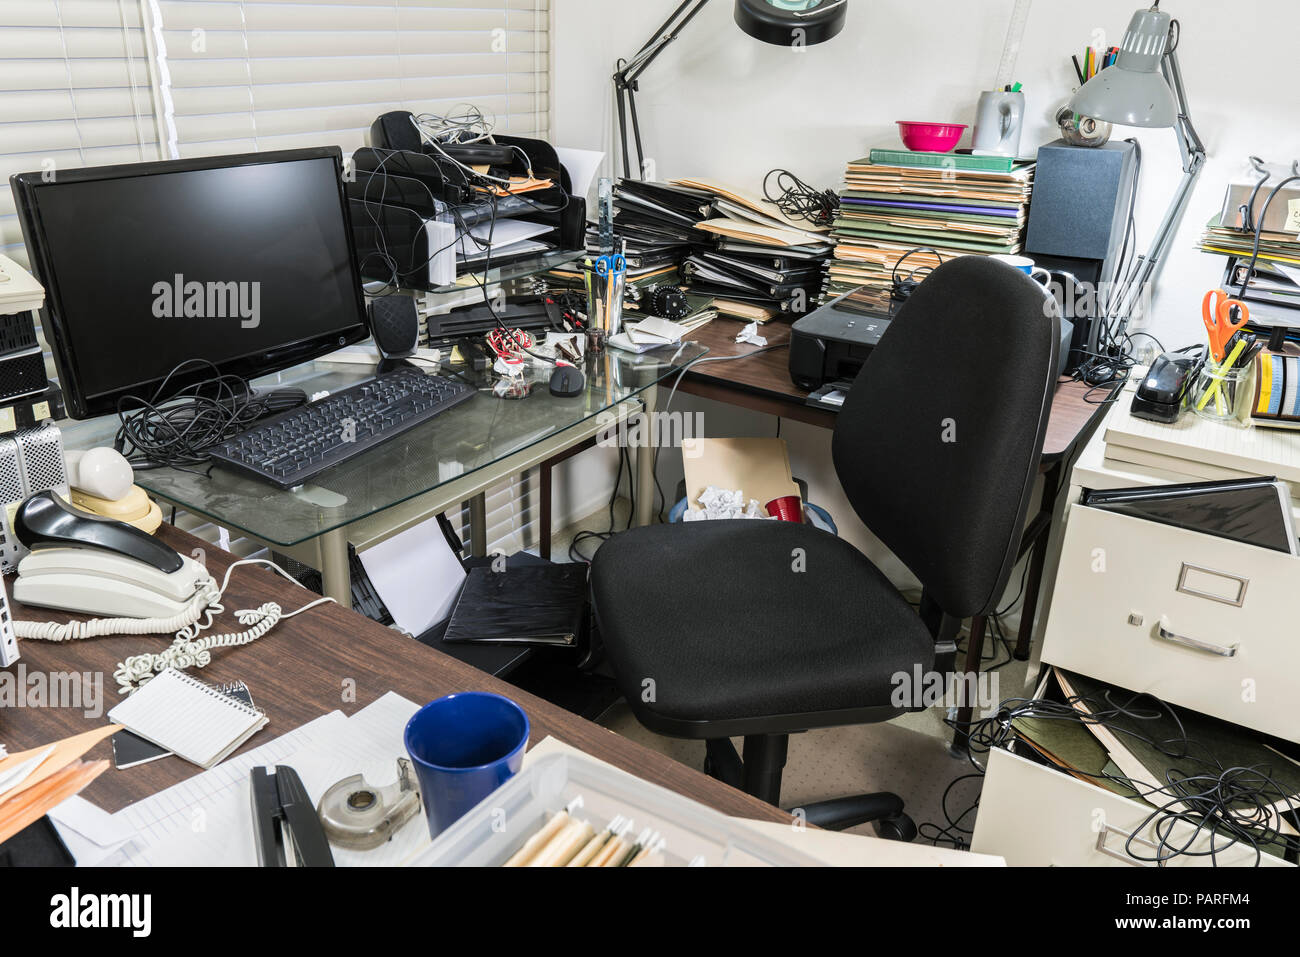 Unordentliches Büro Schreibtisch mit Stapeln von Dateien und ungeordnet durcheinander. Stockfoto